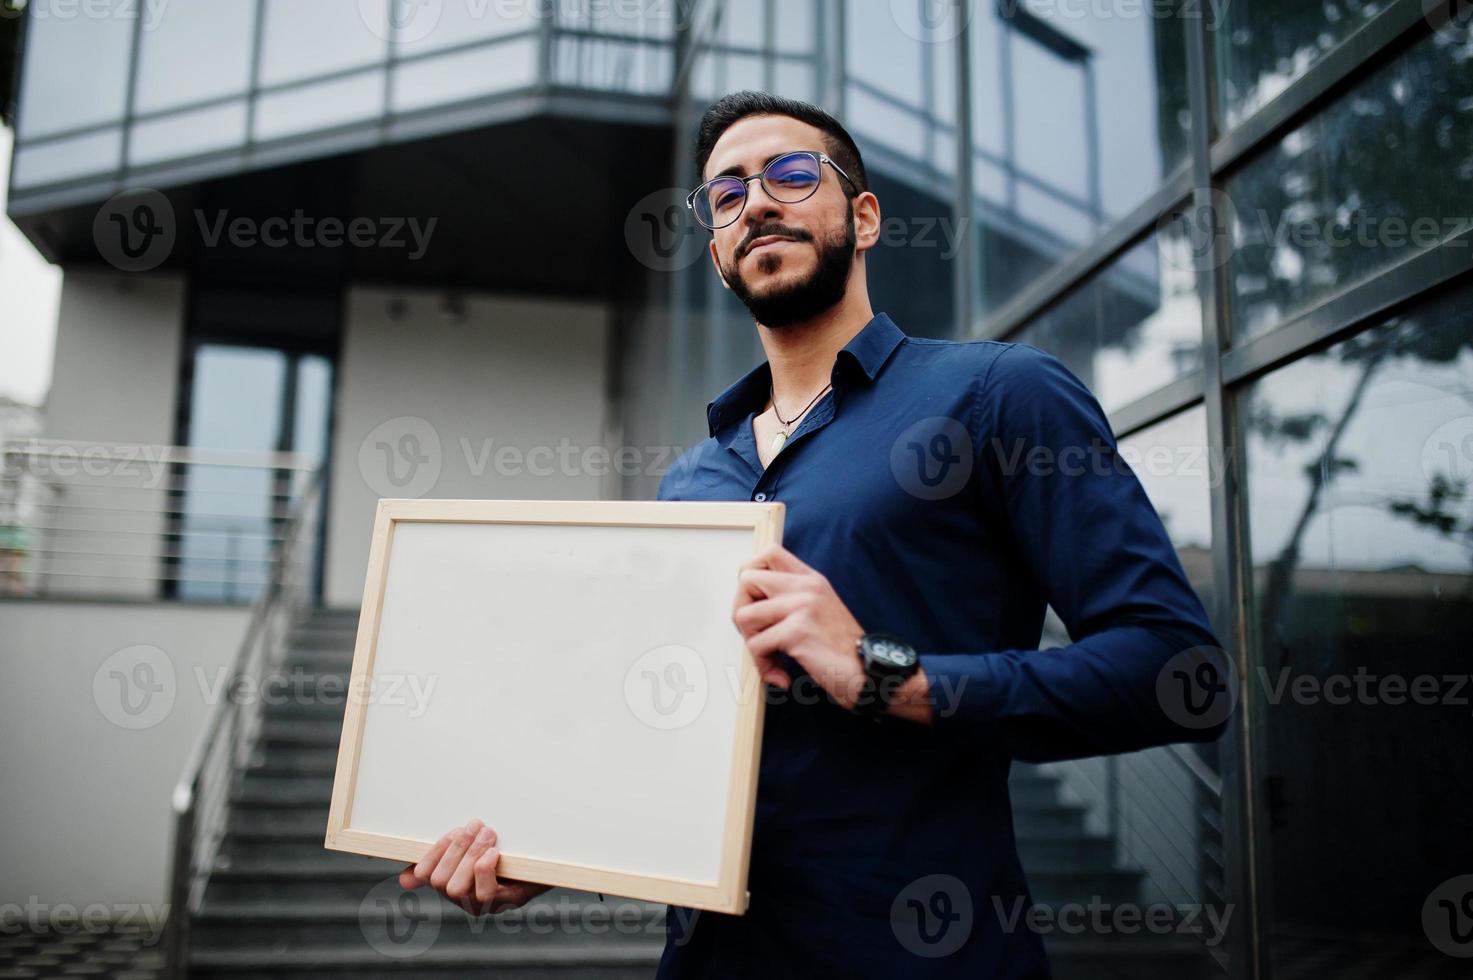 l'homme du moyen-orient porte une chemise bleue, des lunettes, tient un tableau vide blanc. photo